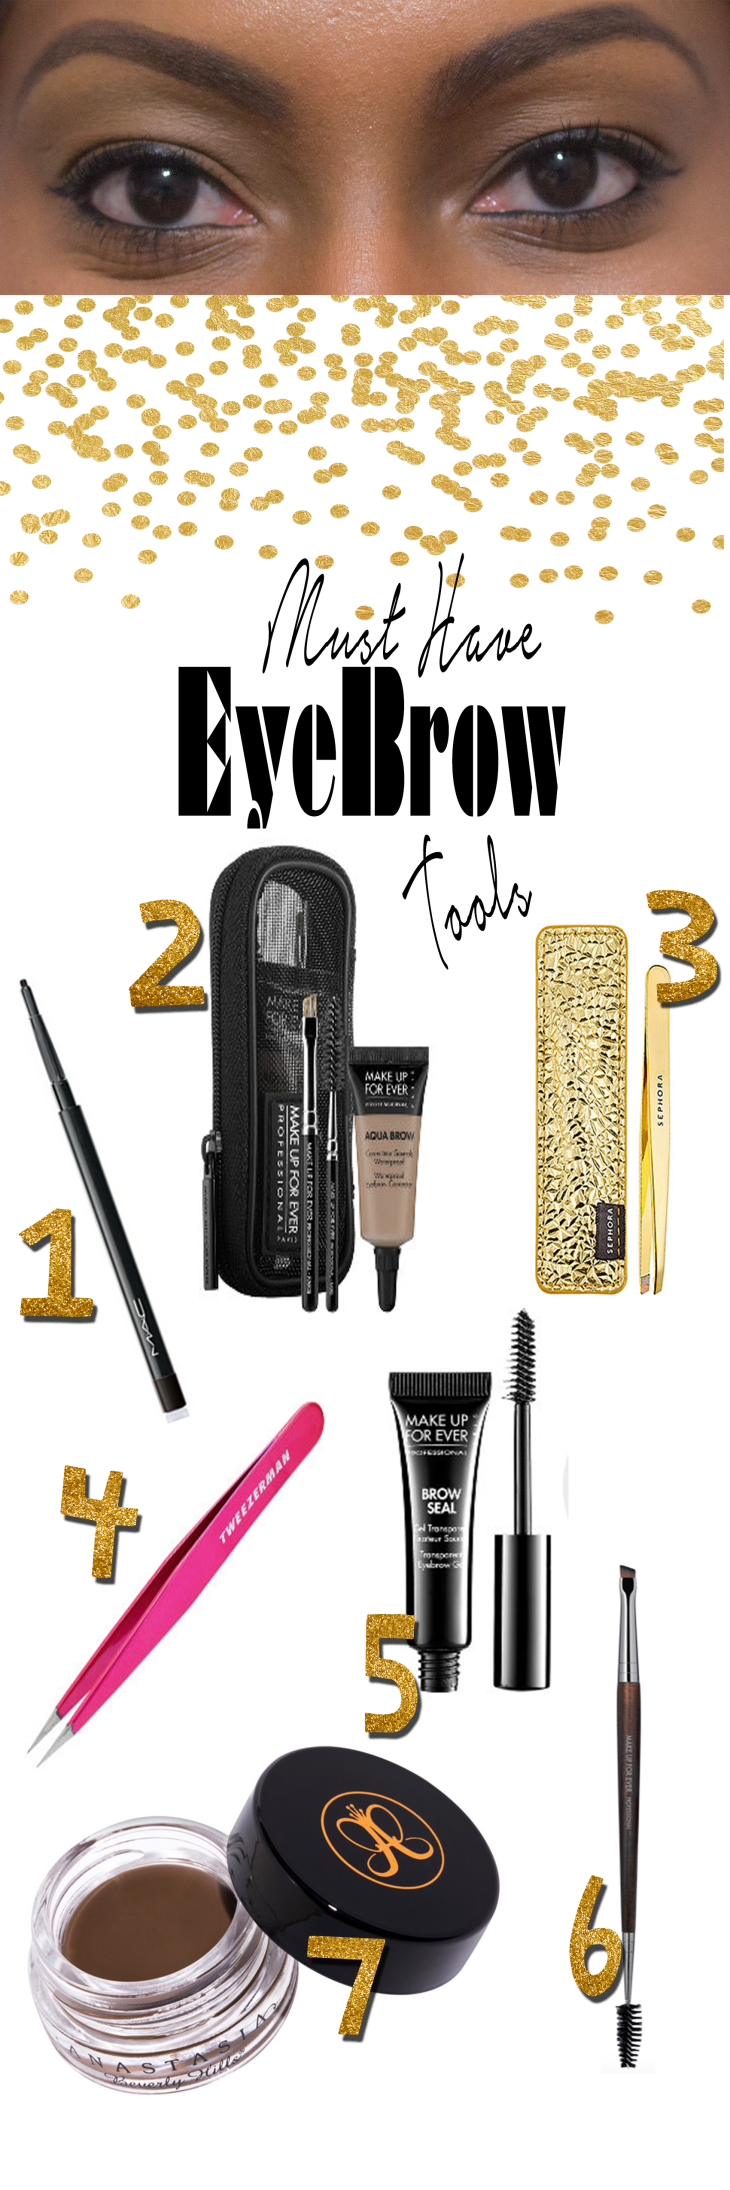 Eyebrow Tools, How to Arch Eyebrows, Tweezing Eyebrows, Plucking Eyebrows